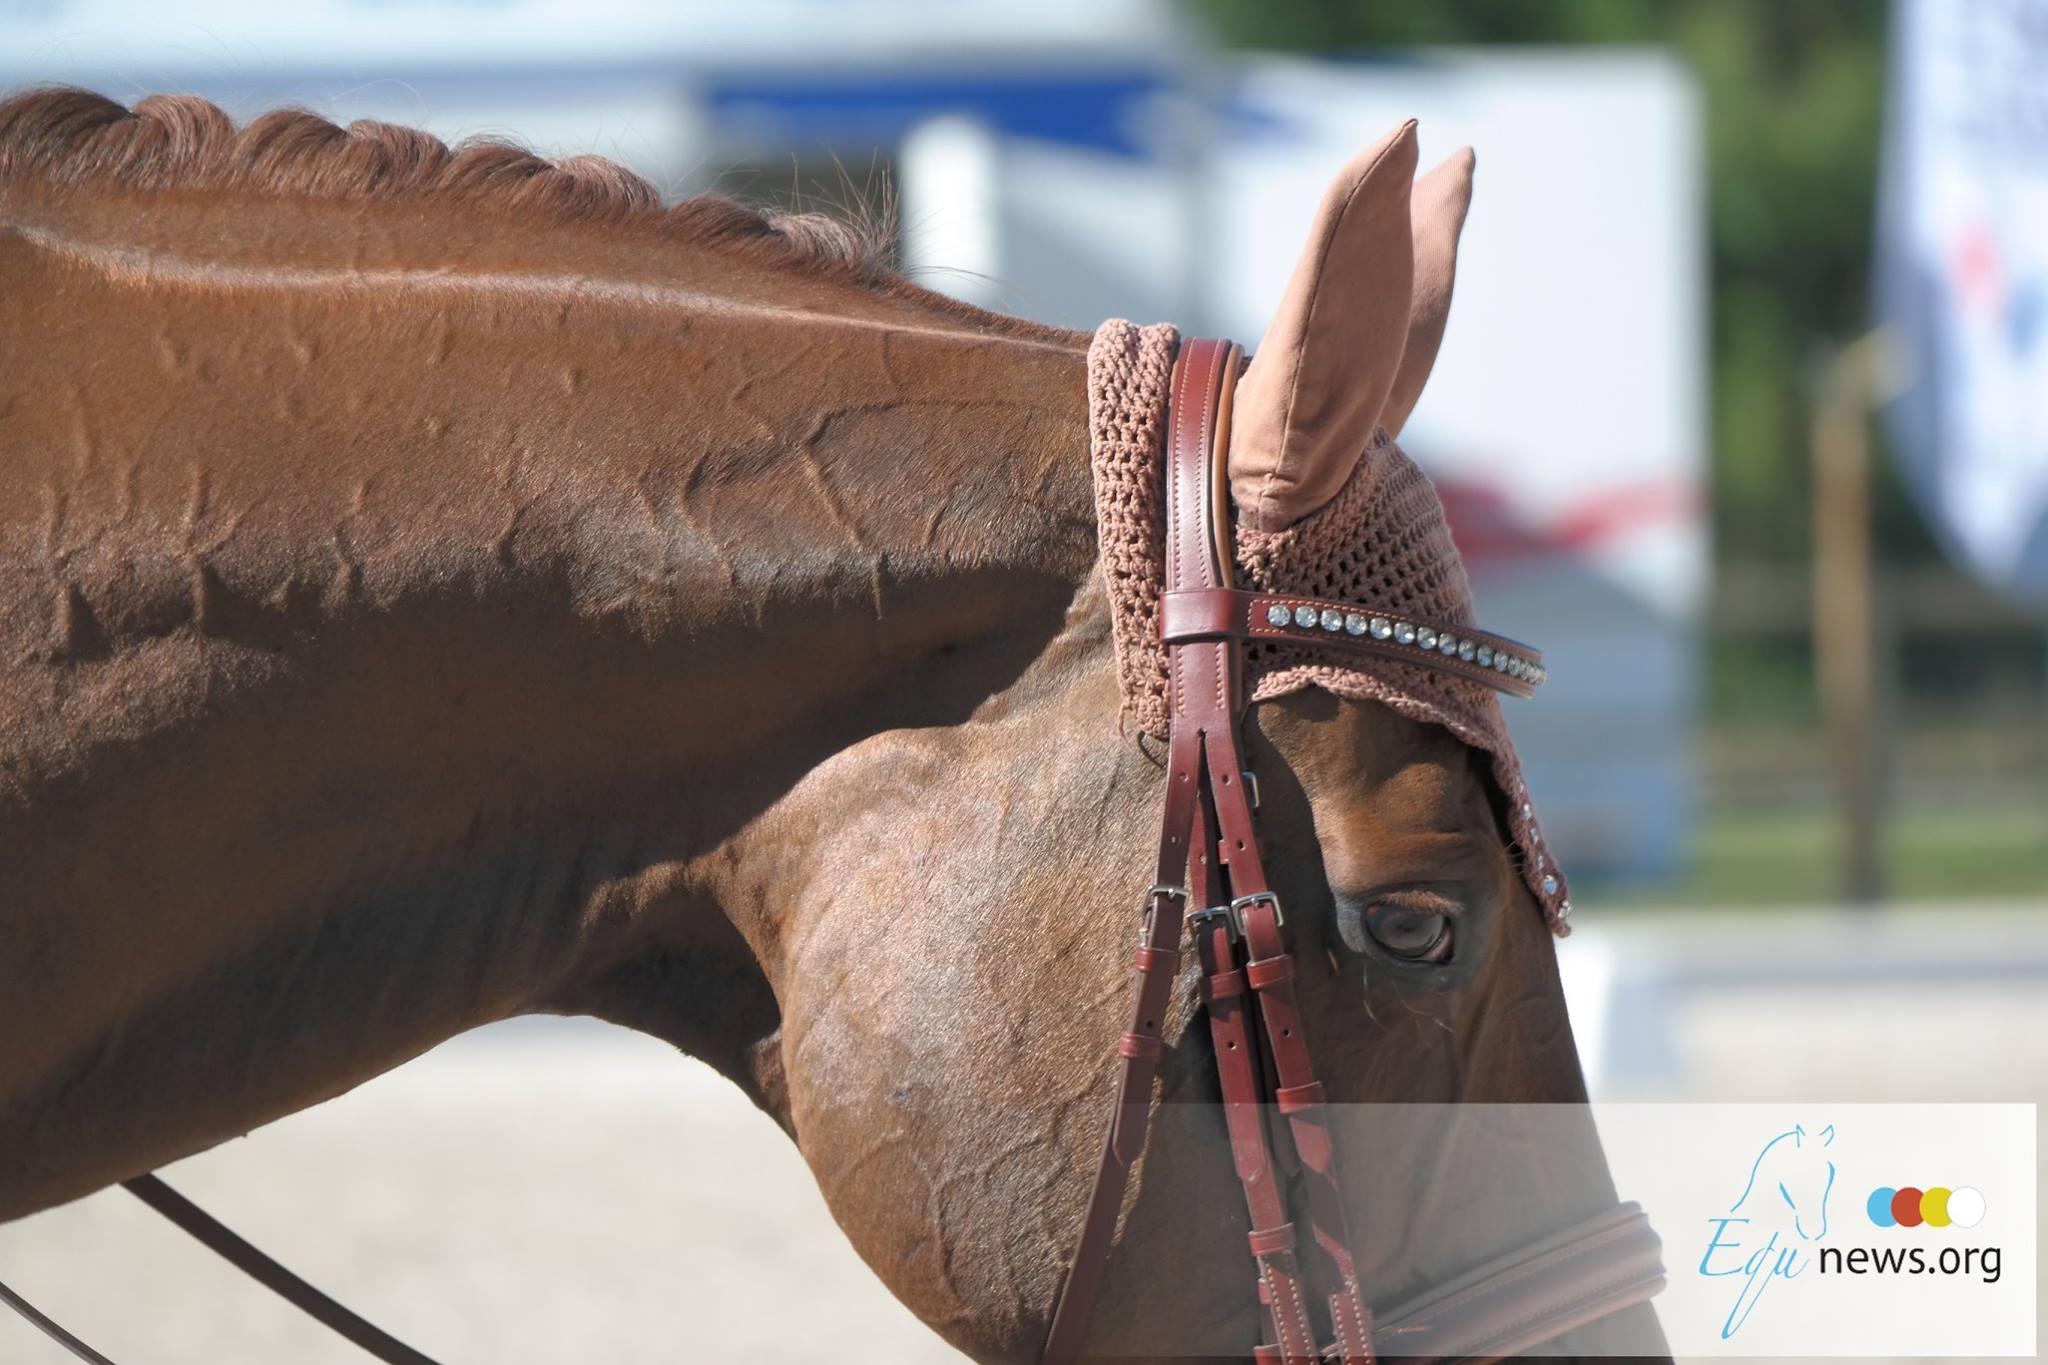 KNHS doet onderzoek naar ongewenst gedrag in de paardensport